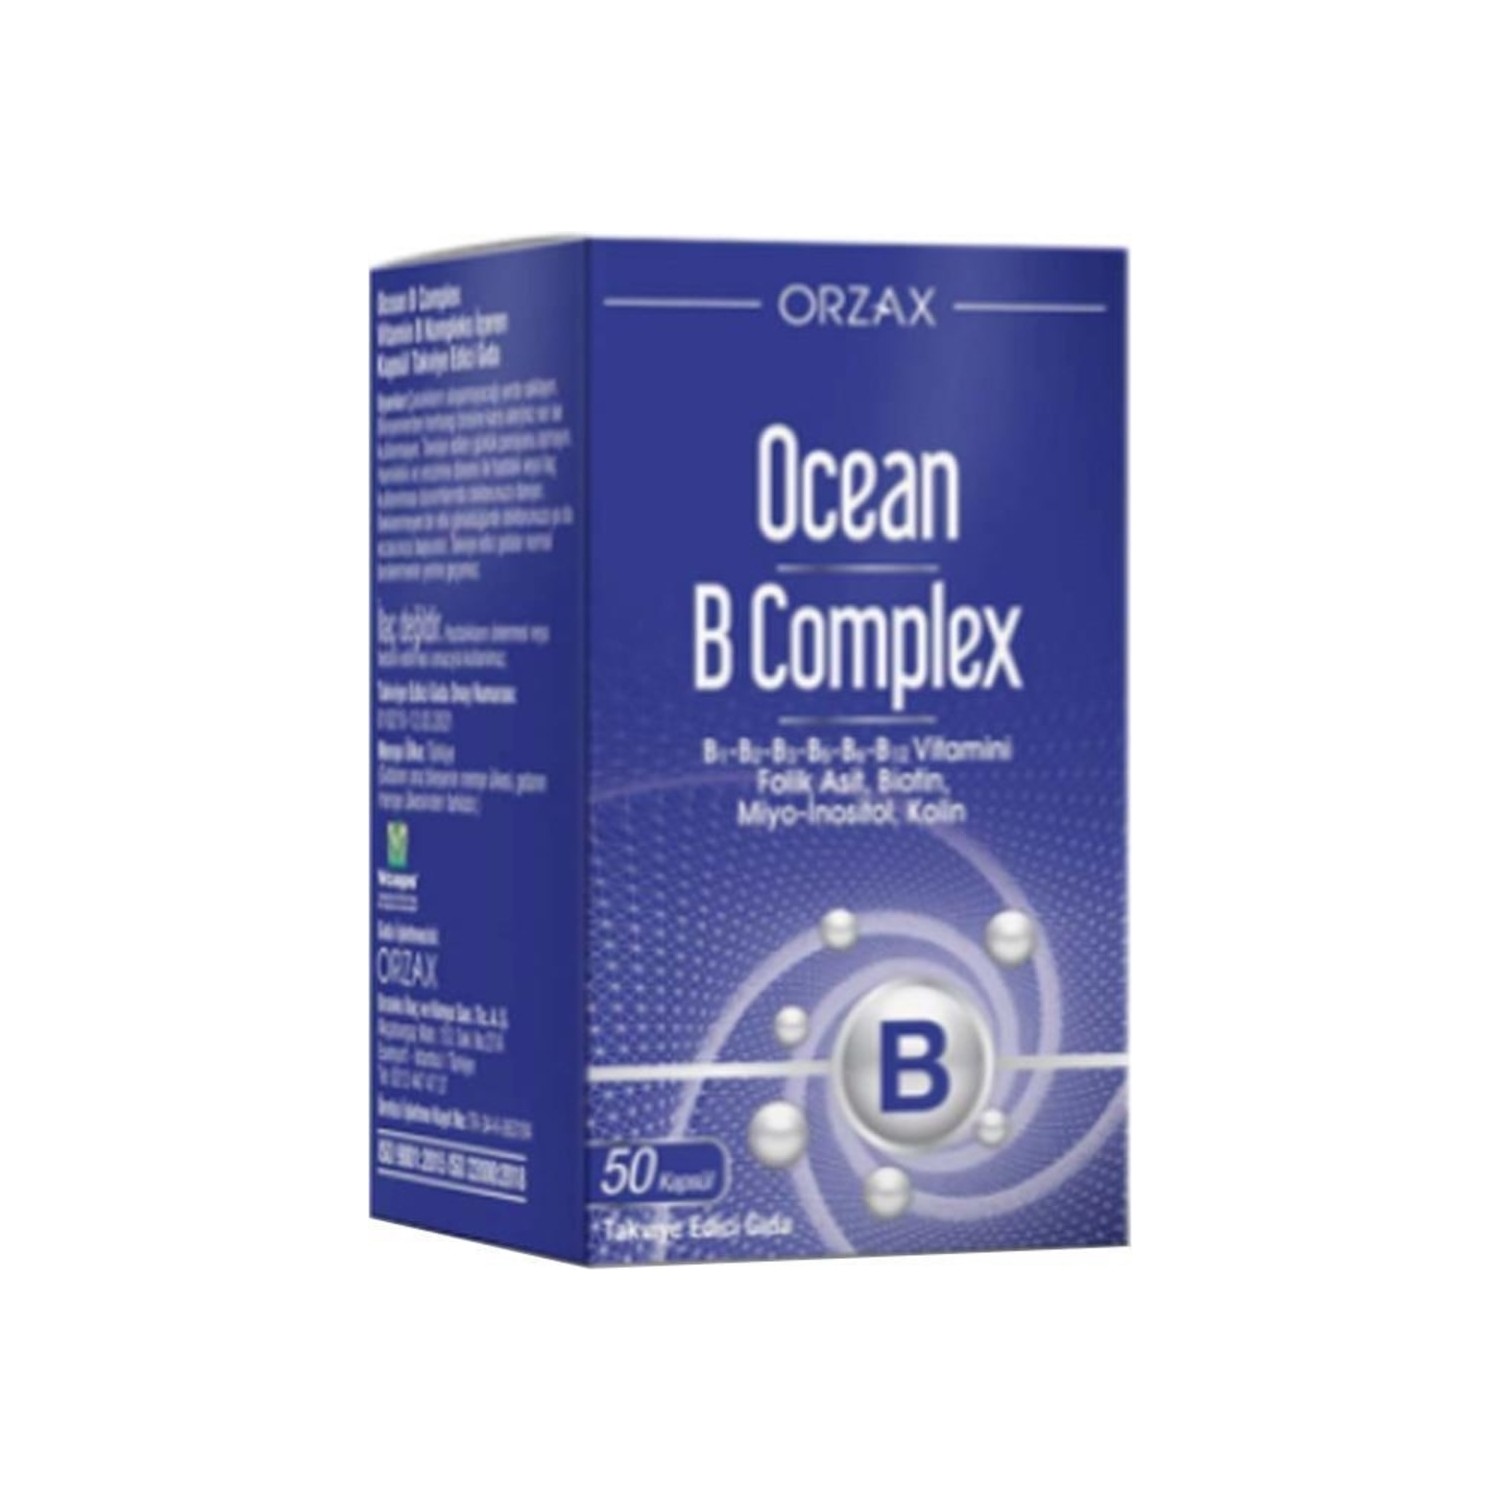 Пищевая комплексная добавка Ocean Orzax B Supplementary Food, 50 капсул qlife витамин b12 биотин и фолиевая кислота 60 капсул натуральный b12 цинковая кость развитие девиктива и фолиевой кислоты капсулы новинка